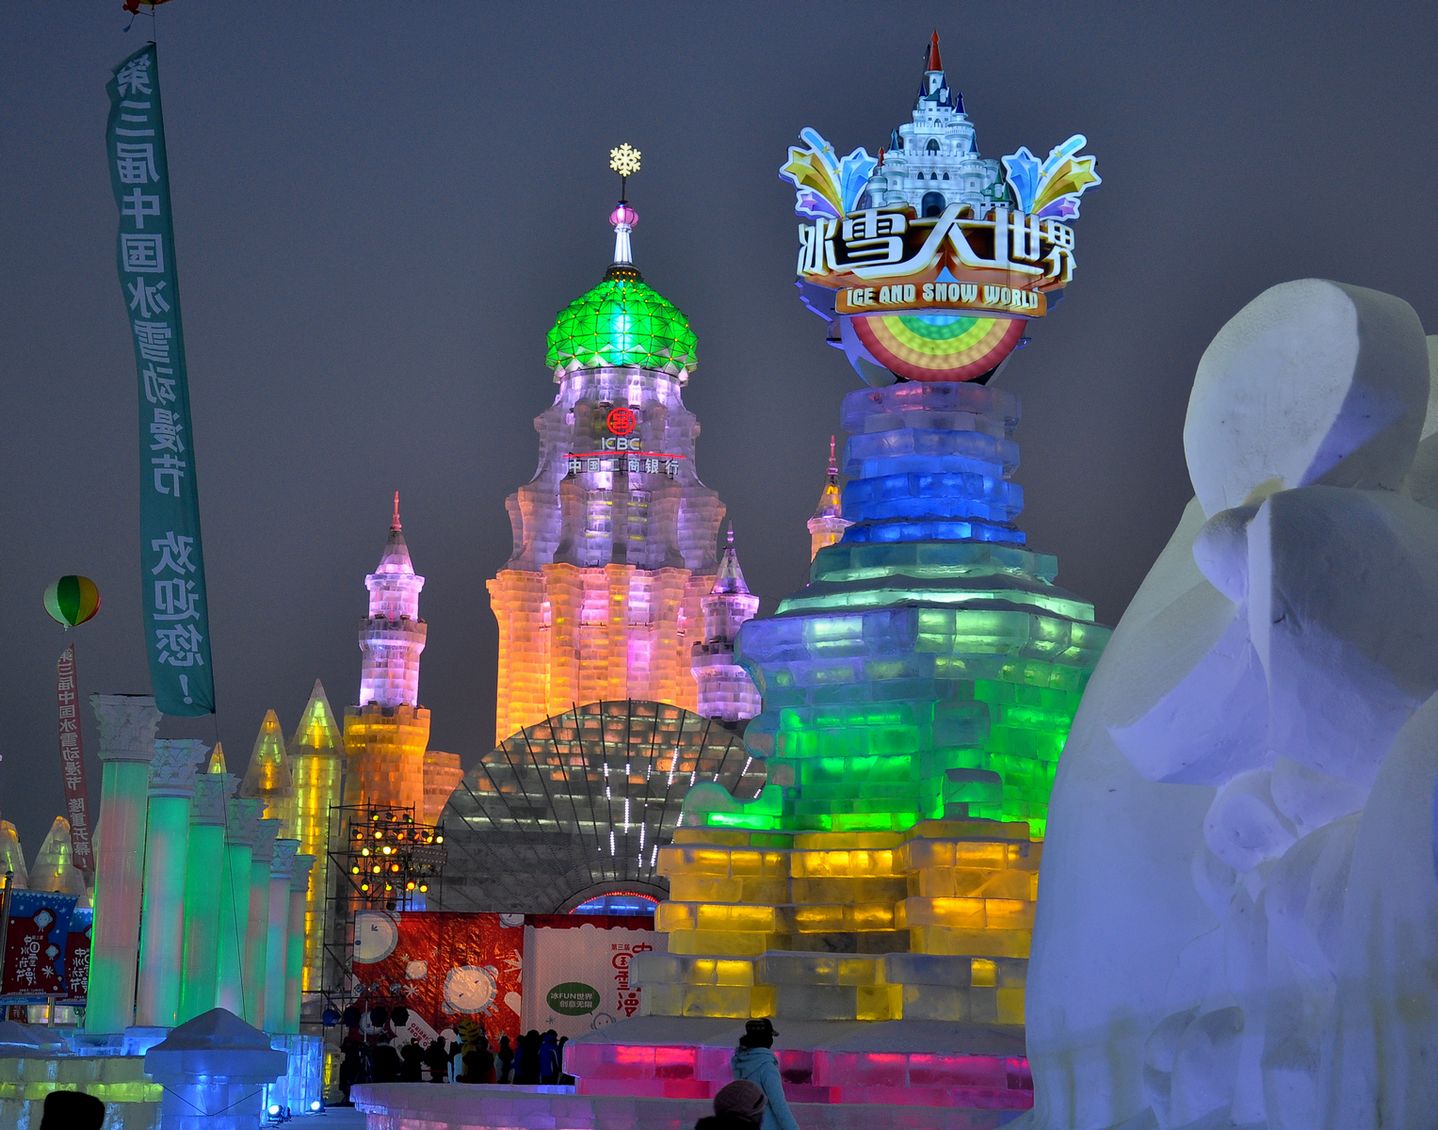 冰雪节在哈尔滨冰雪大世界盛大开幕 8小时直播品味一座城 - 中国日报网